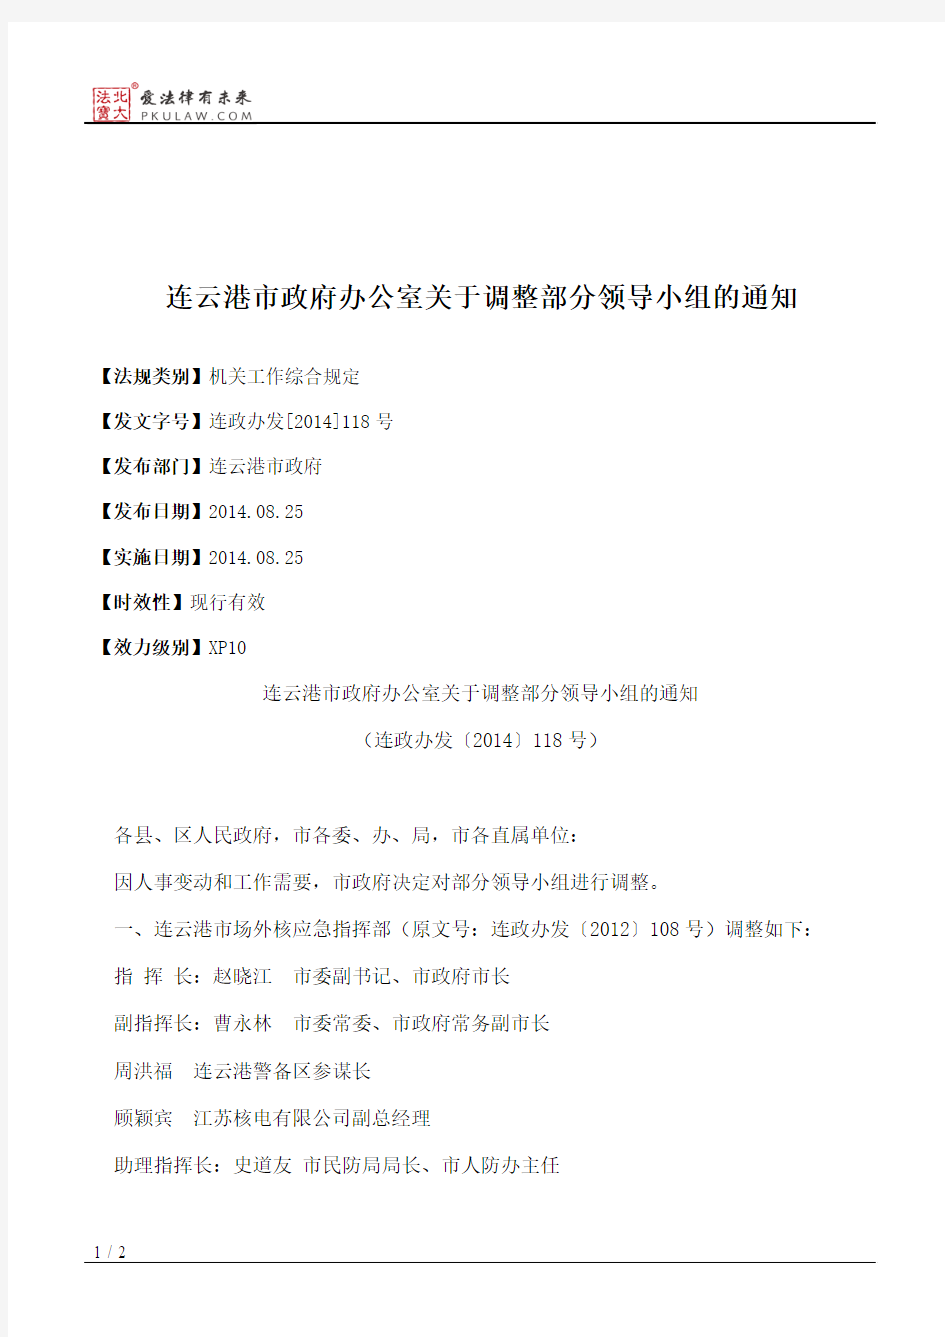 连云港市政府办公室关于调整部分领导小组的通知